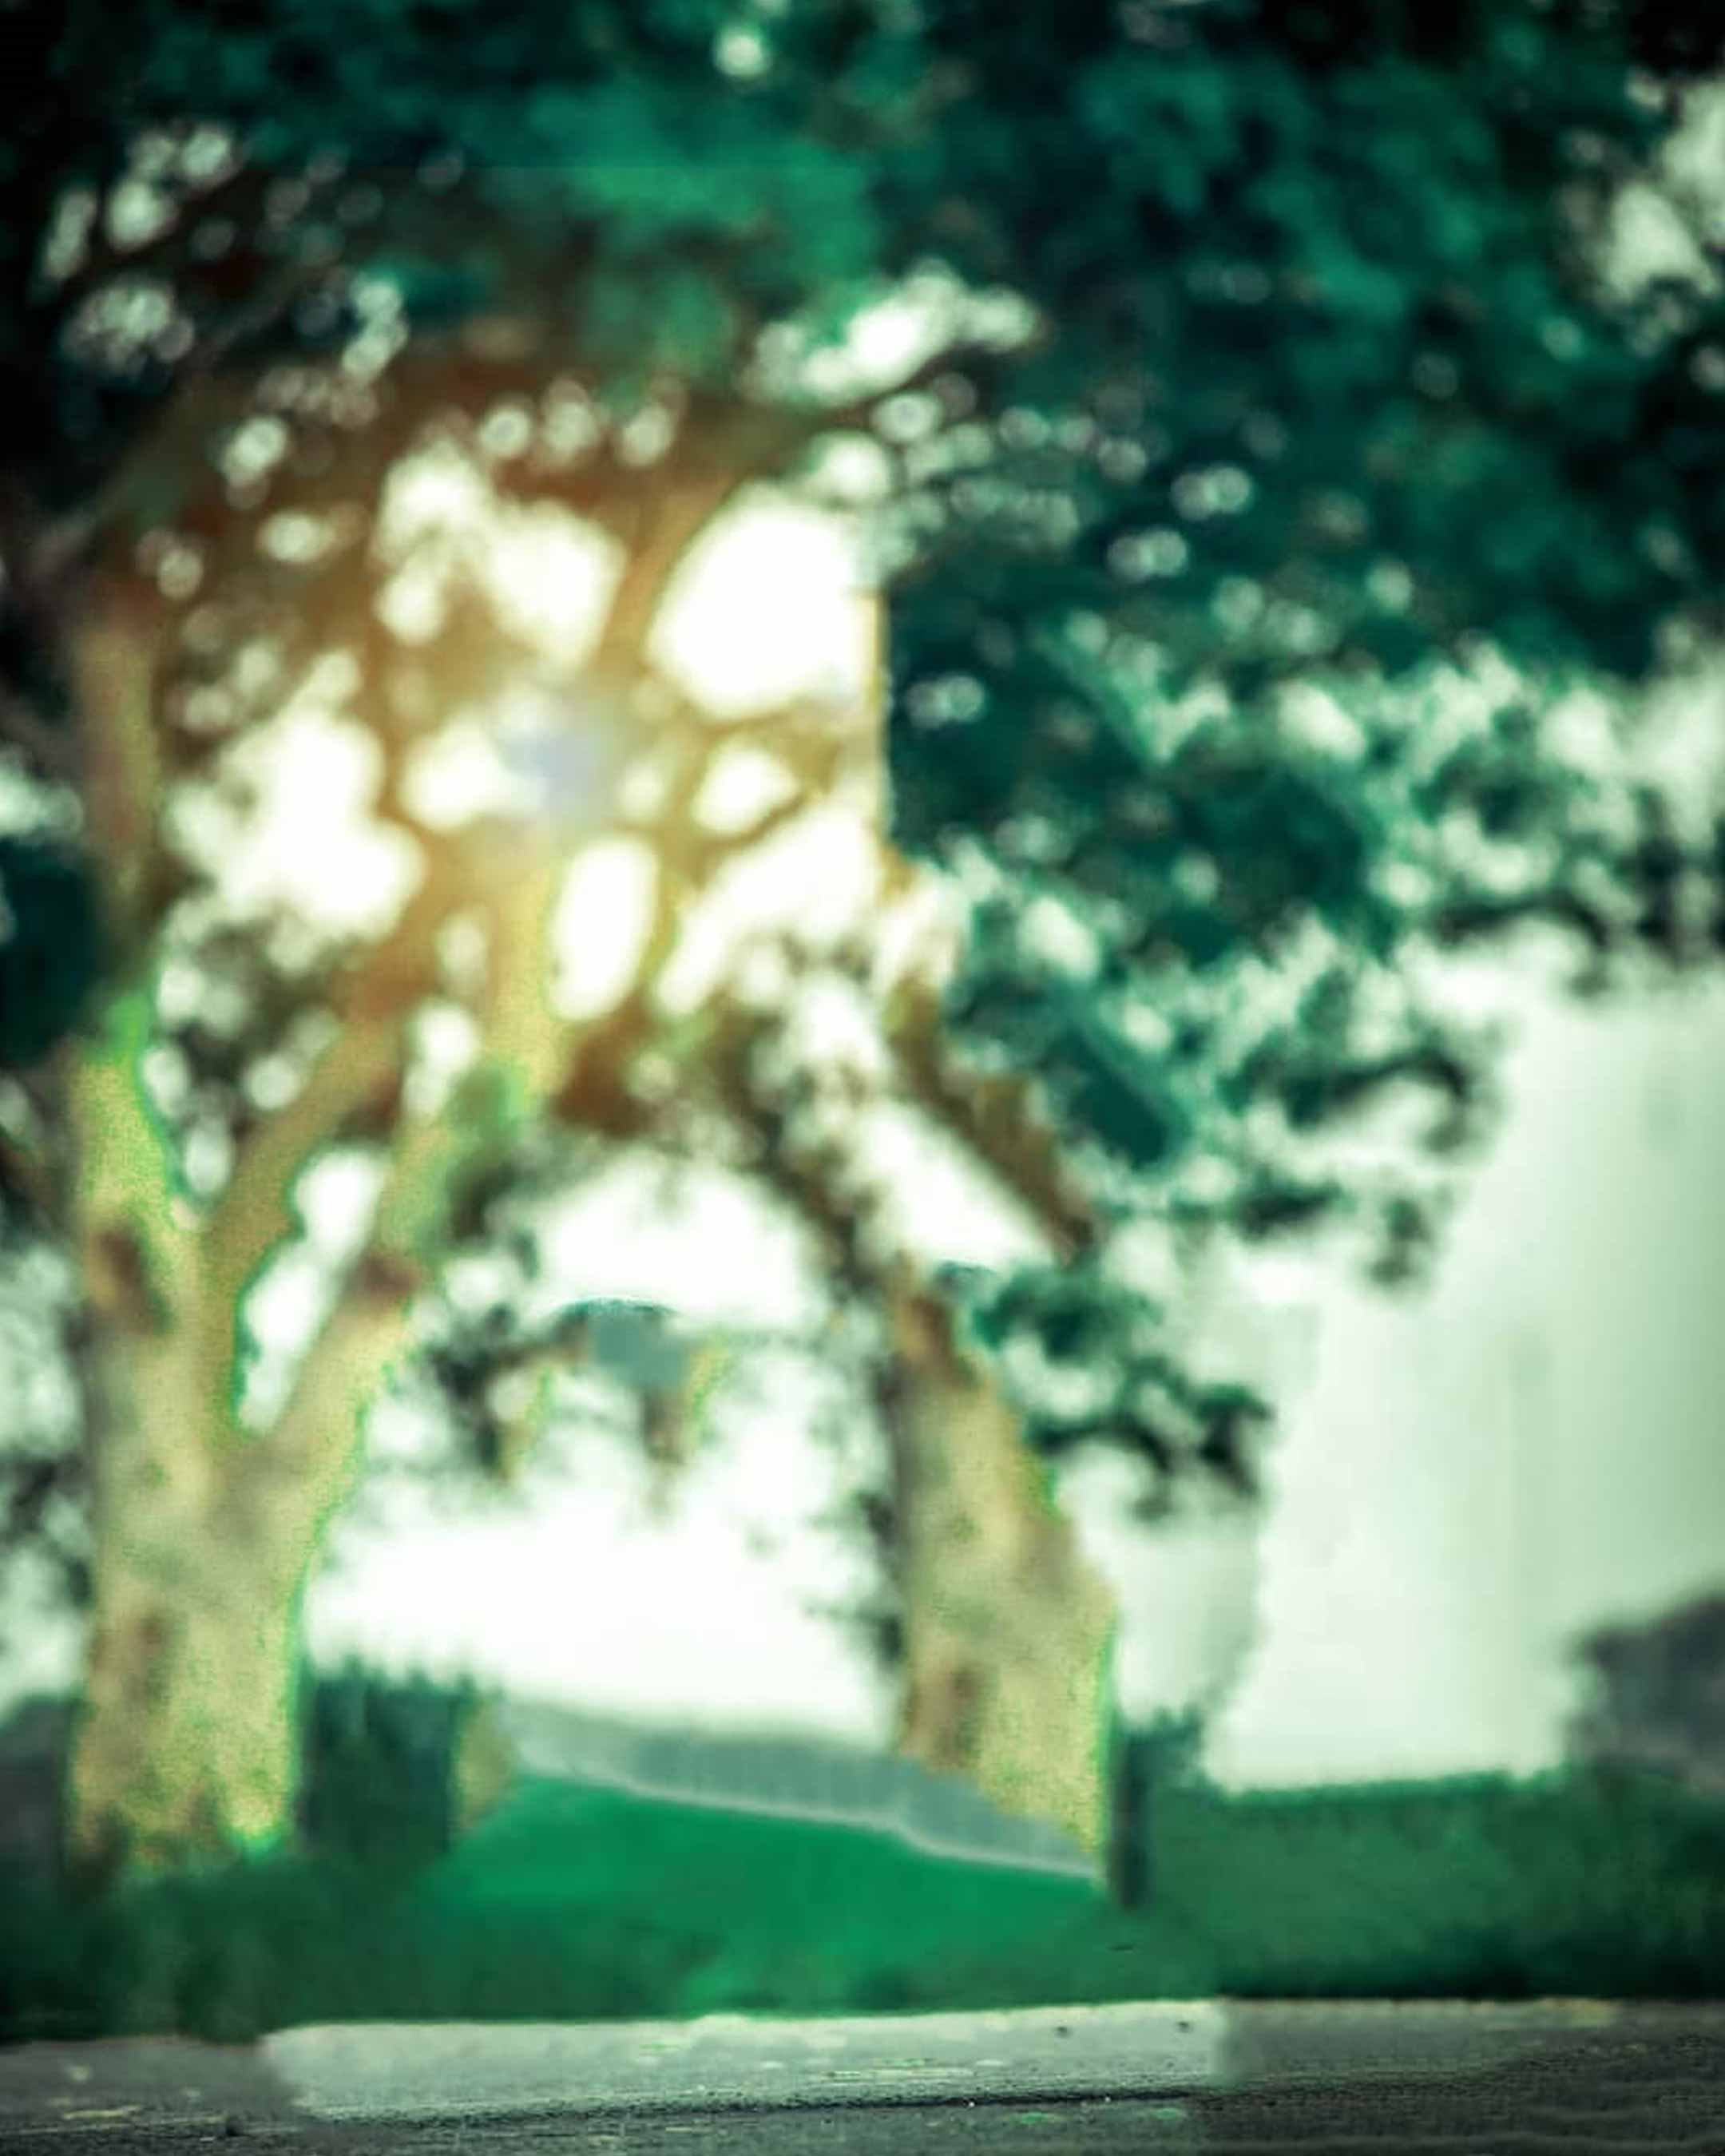 Nền màu xanh lục tối Snapseed miễn phí: Tìm kiếm nguồn ảnh nền miễn phí với màu xanh lục tối của Snapseed? Hãy truy cập ngay vào bức ảnh nền màu xanh lục tối này để có thể tạo ra những sản phẩm tuyệt vời của riêng mình. Màu xanh lục tối này rất phù hợp cho các bức ảnh trang trọng và đầy cảm xúc.